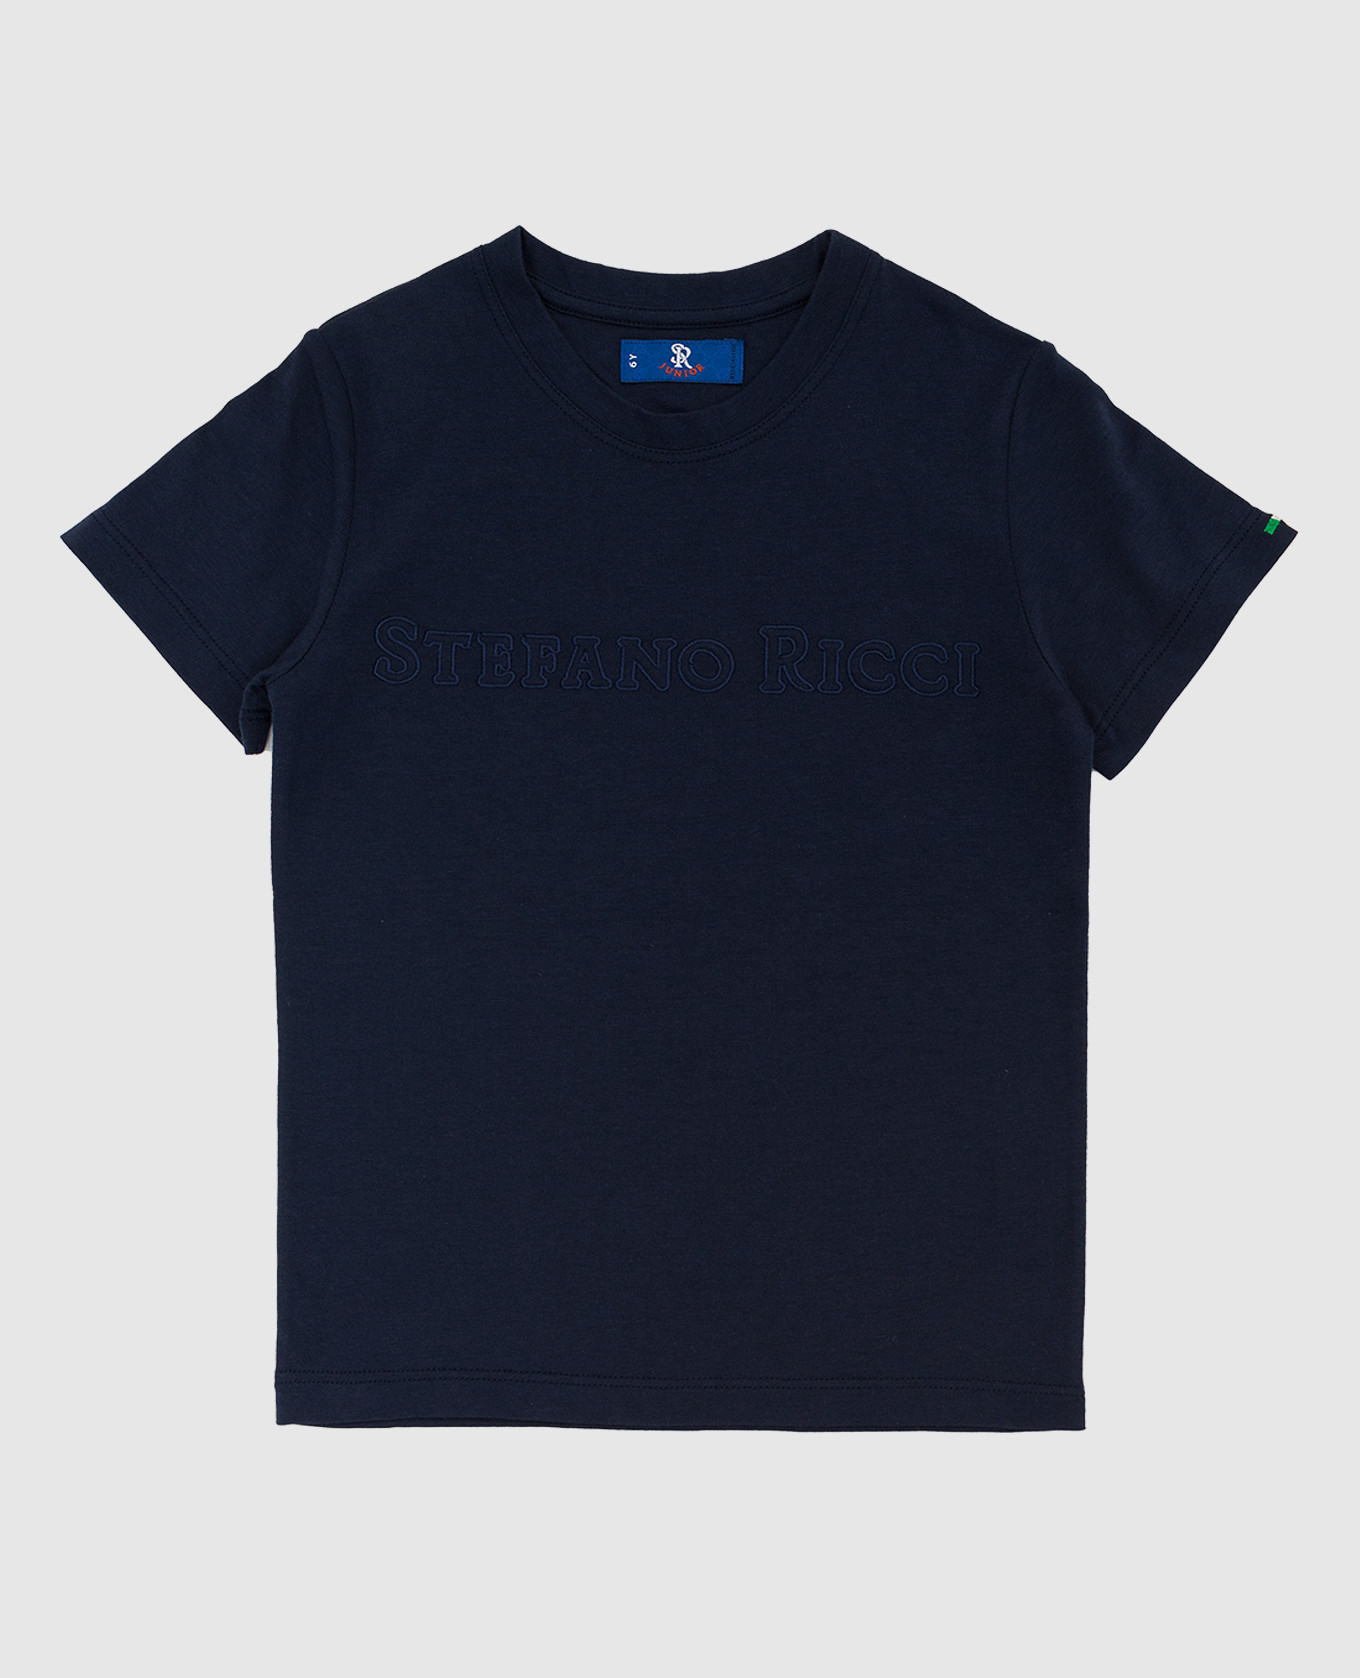 Children's dark blue T-shirt with logo